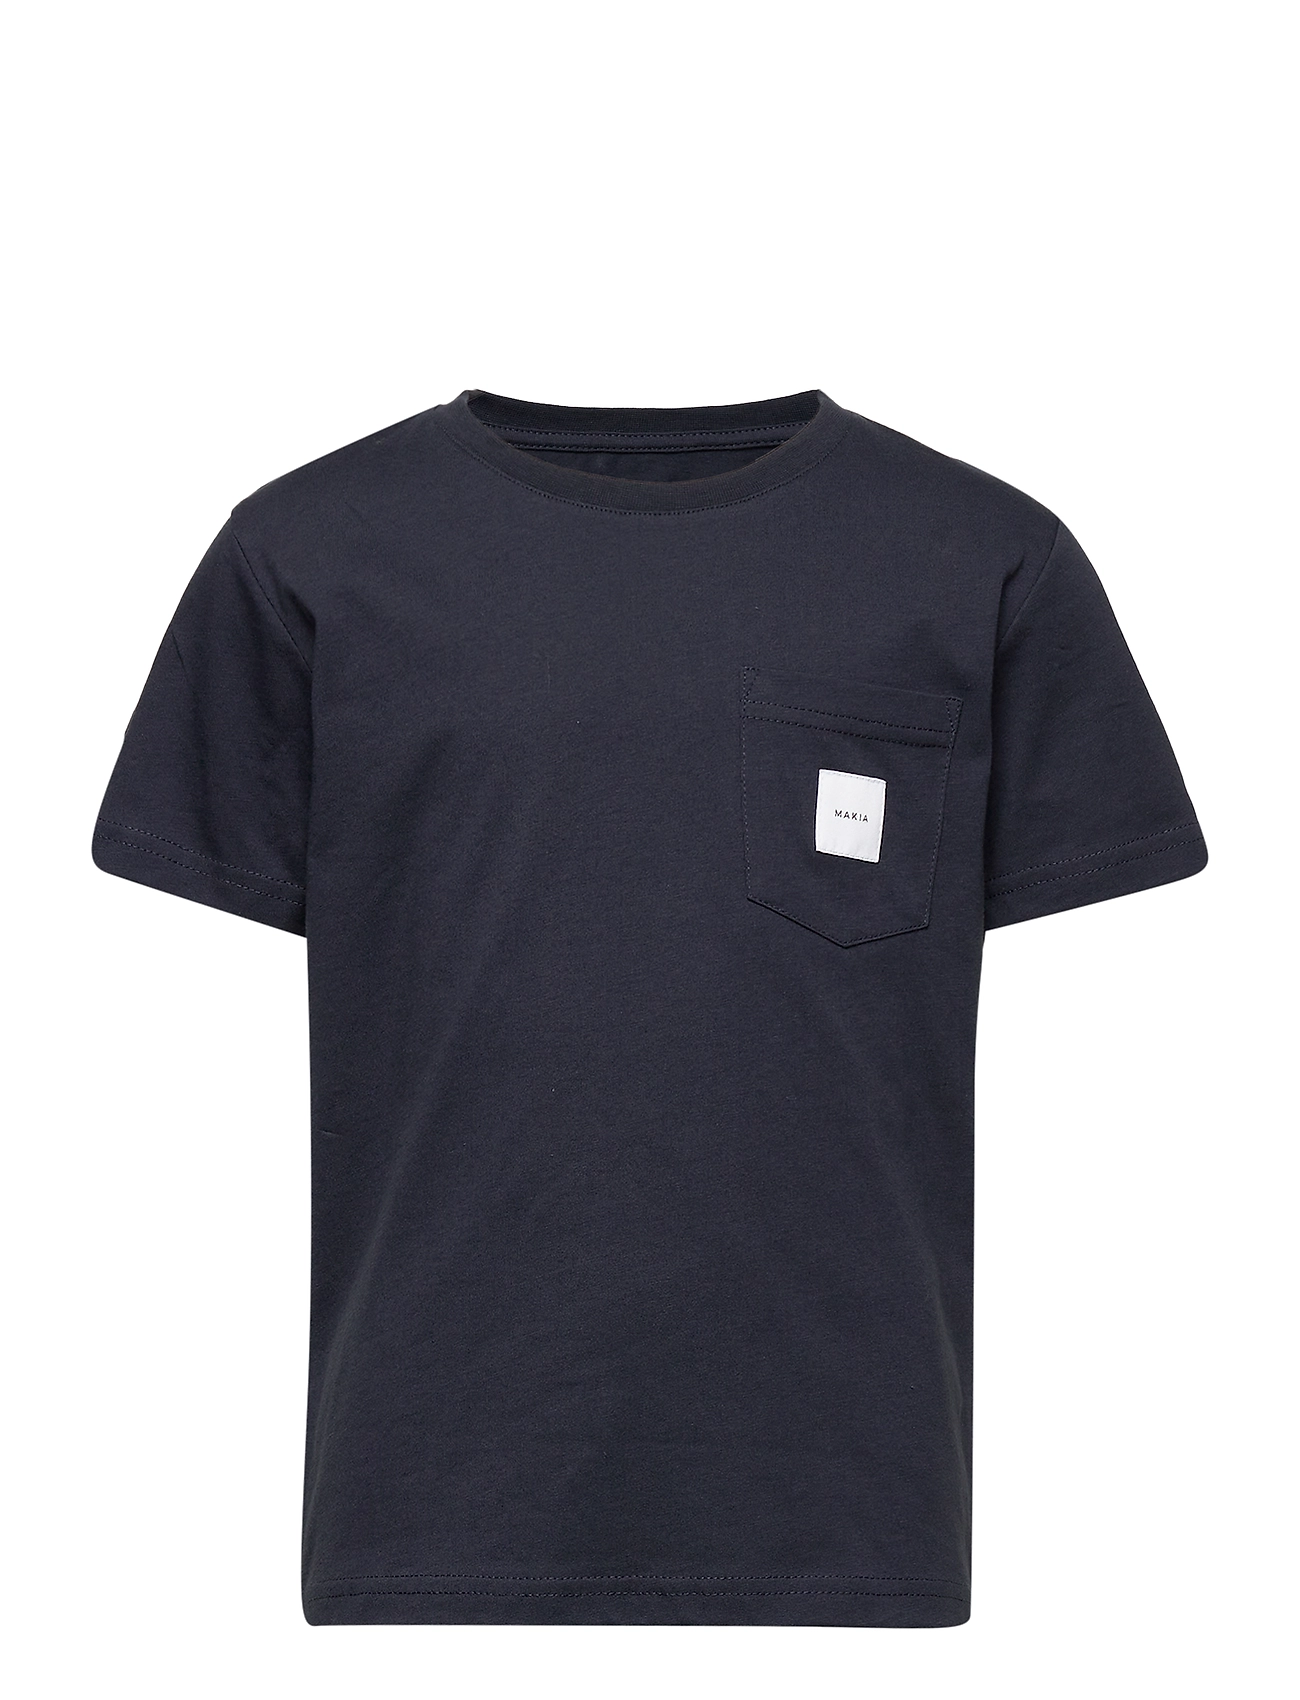 Pocket T-Shirt T-shirts Short-sleeved Sininen Makia